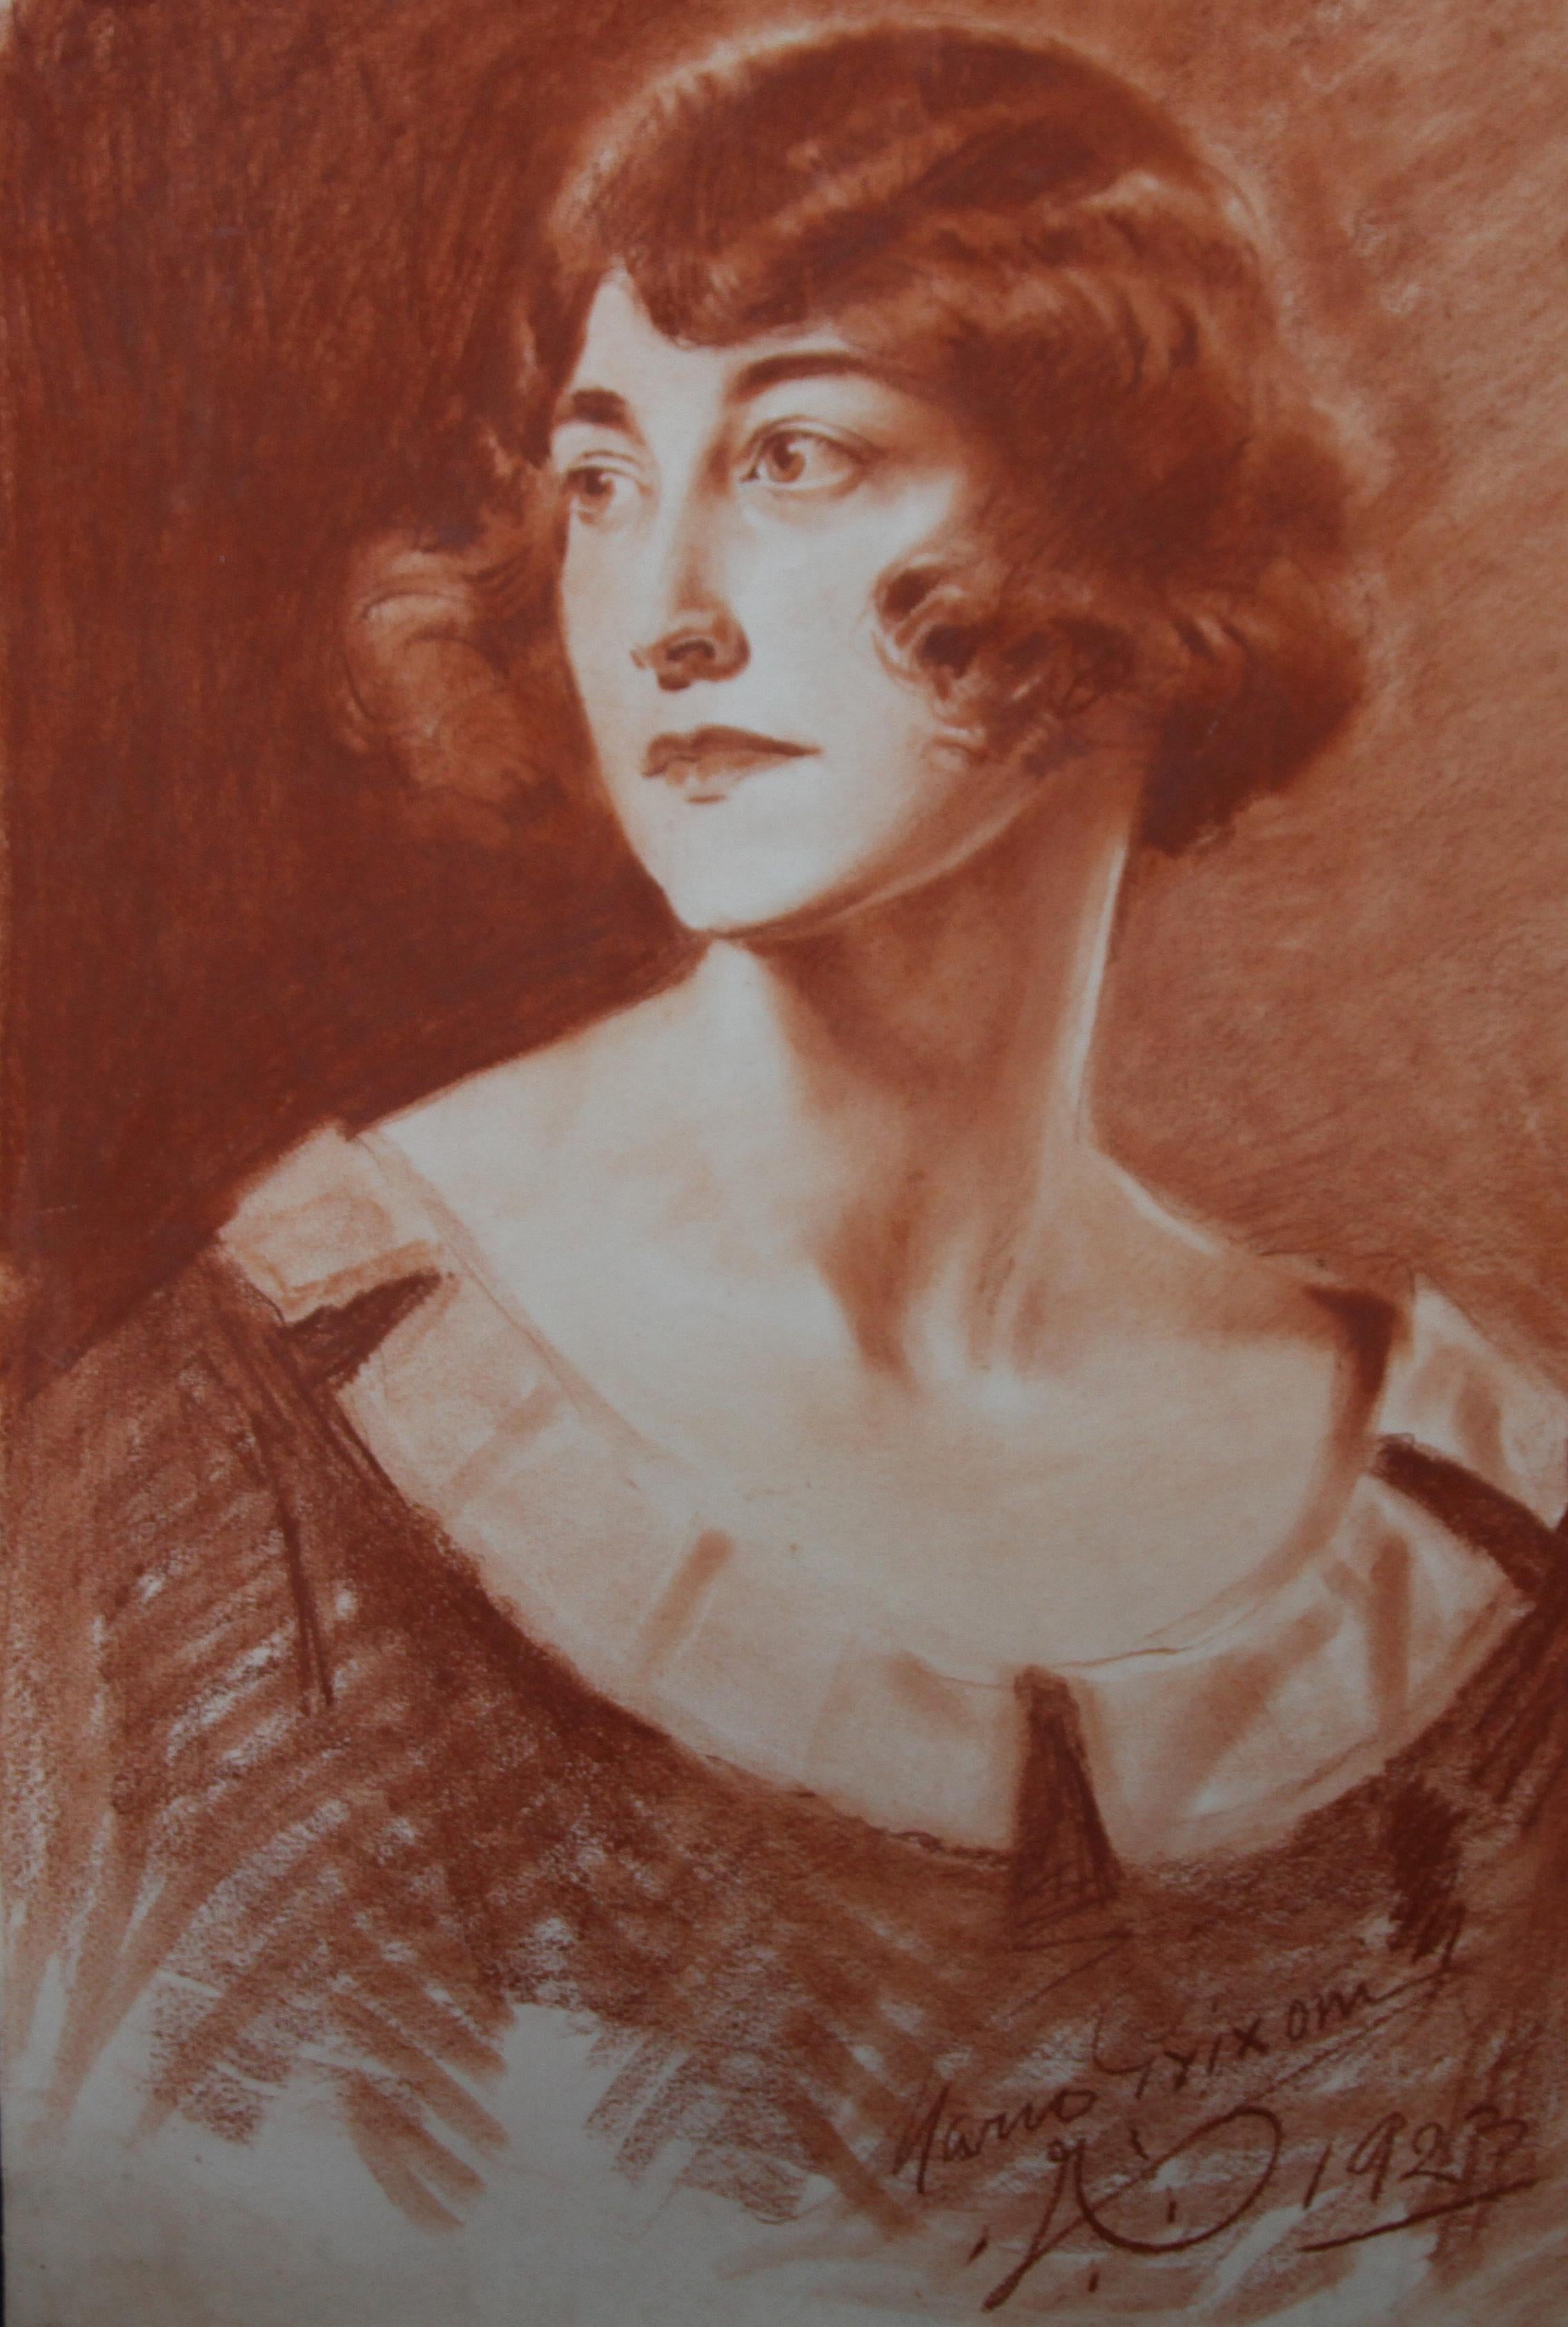 Es handelt sich um eine sehr hübsche Sanguiniker-Kreidezeichnung einer jungen Frau auf Papier von Graf Mario Grixoni aus dem Jahr 1923.  Ausgeführt von einem der führenden Künstler der Zeit ist es ein sehr auffälliges und faszinierendes Porträt im